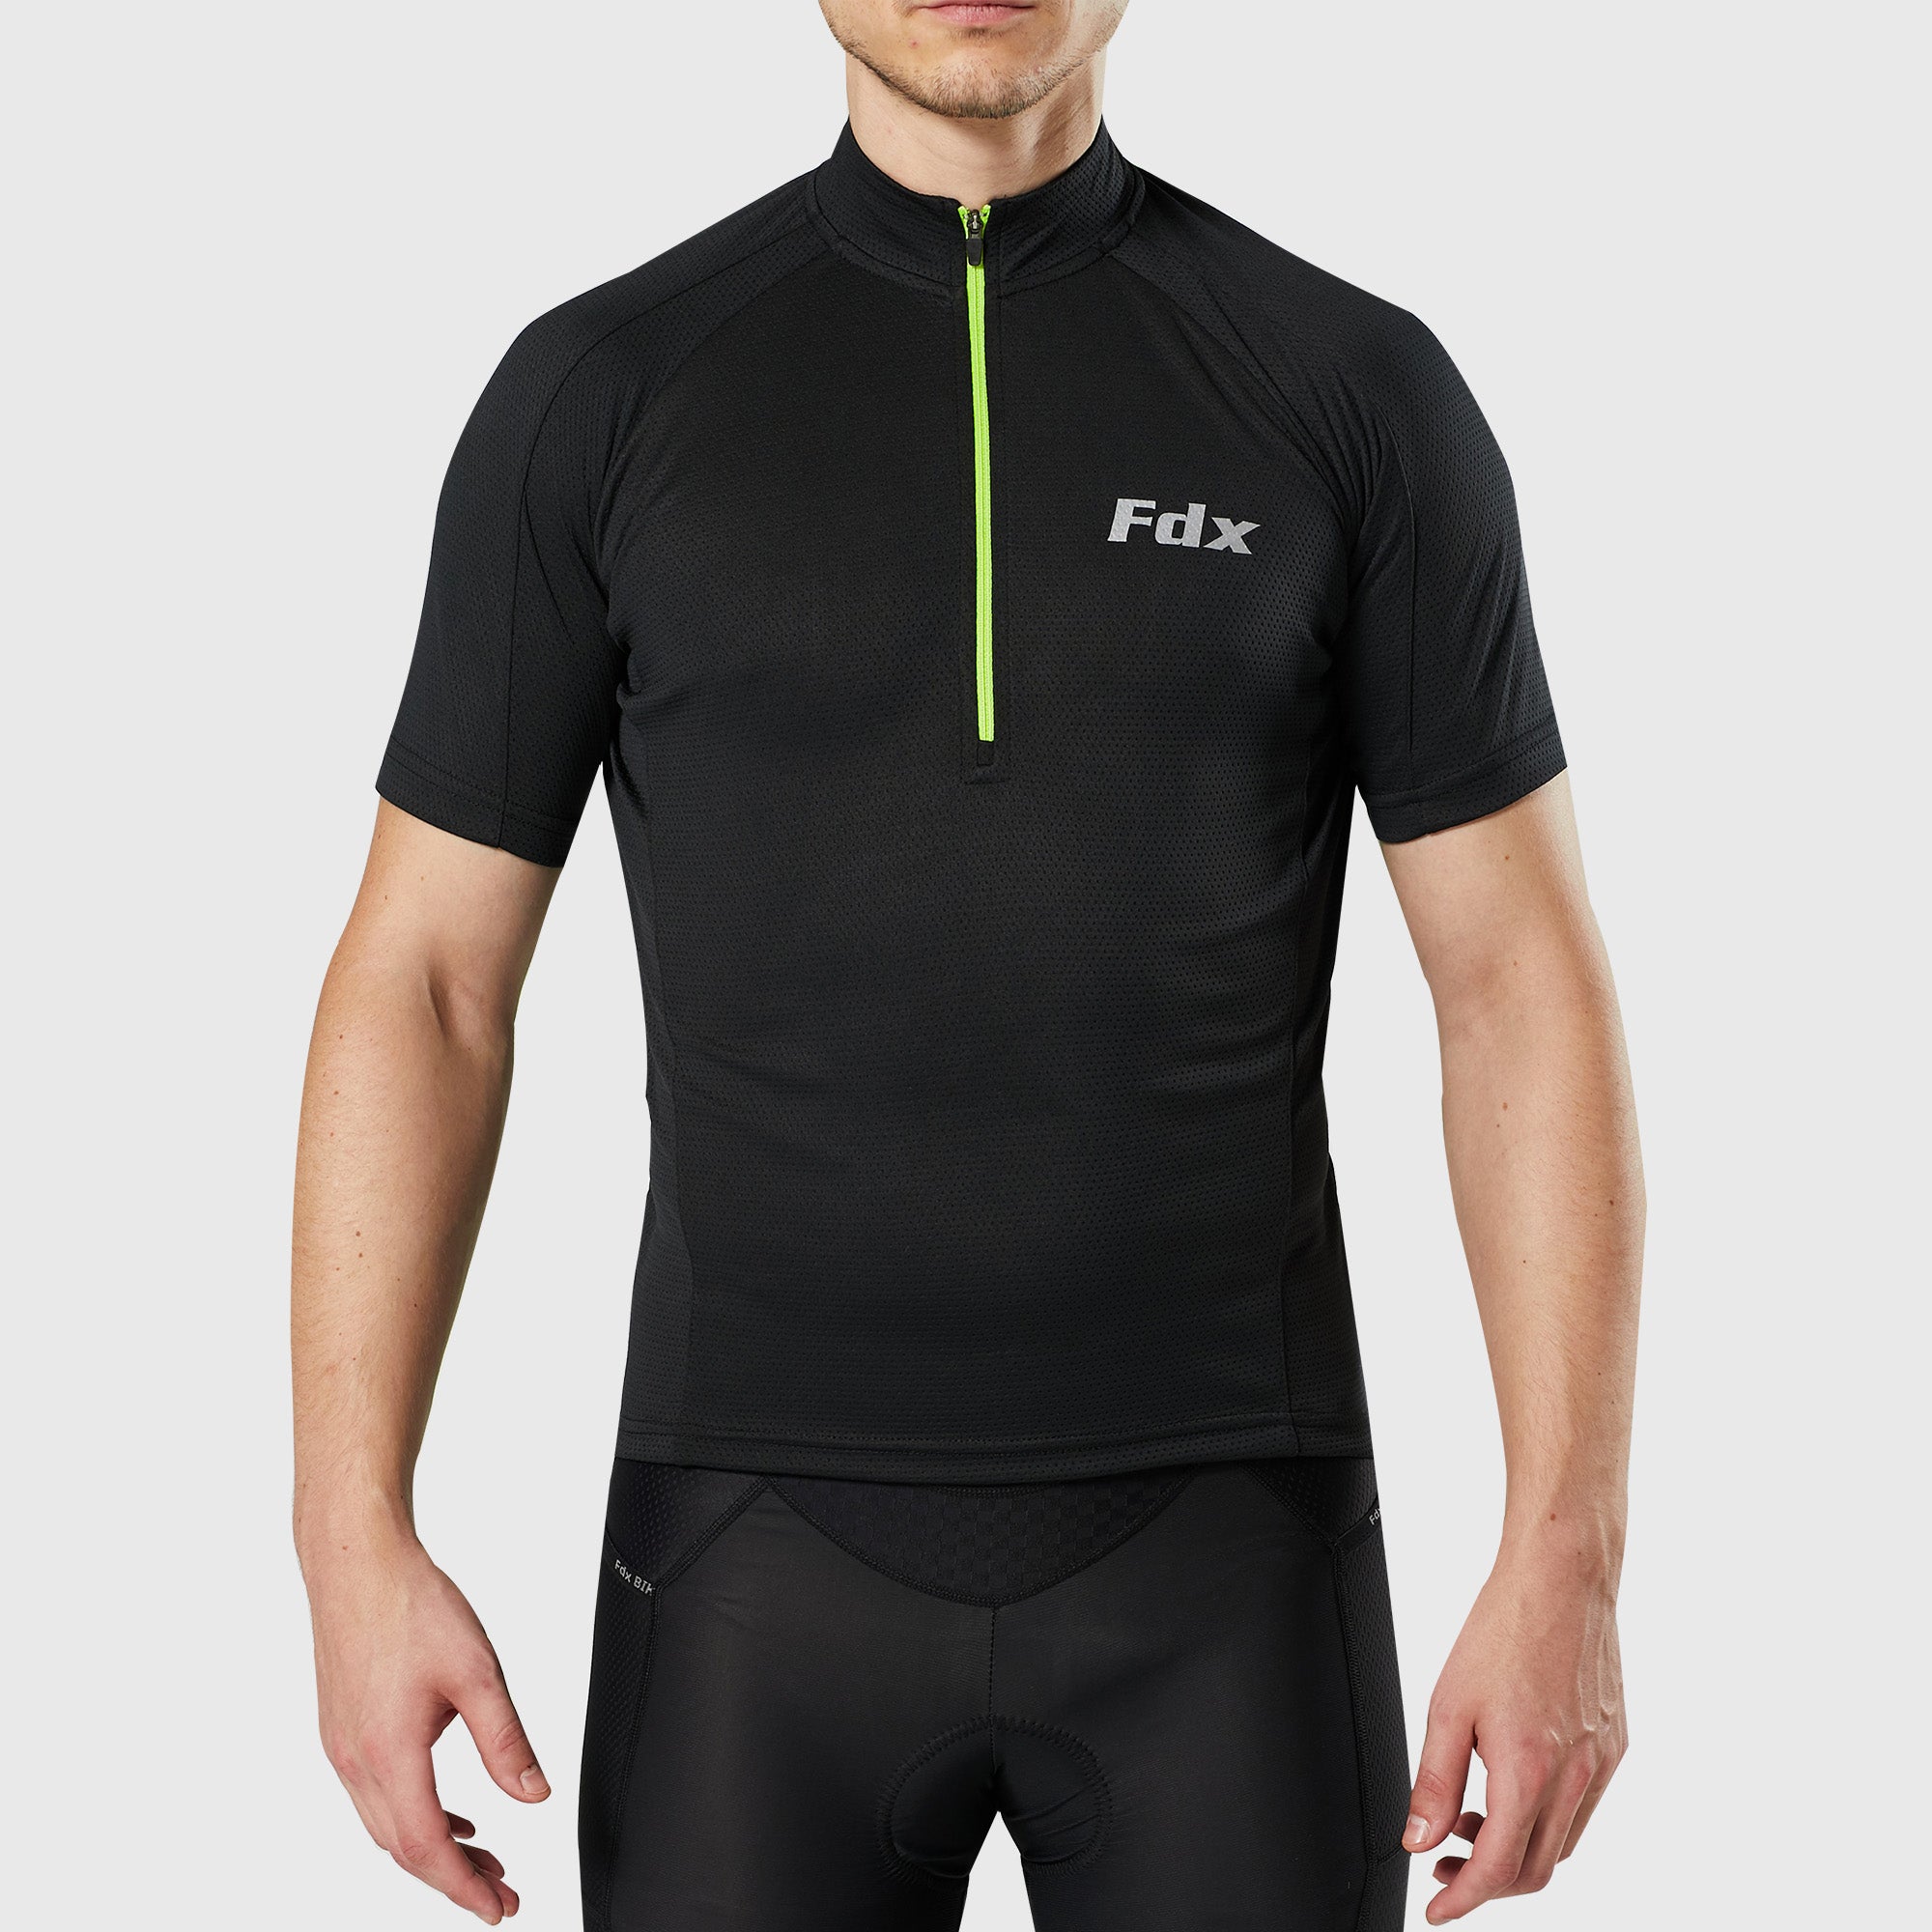 Fdx Mens Black Short Sleeve Cycling Jersey for Summer Best Road Bike Wear Top Light Weight, Full Zipper, Pockets & Hi-viz Reflectors - Pace